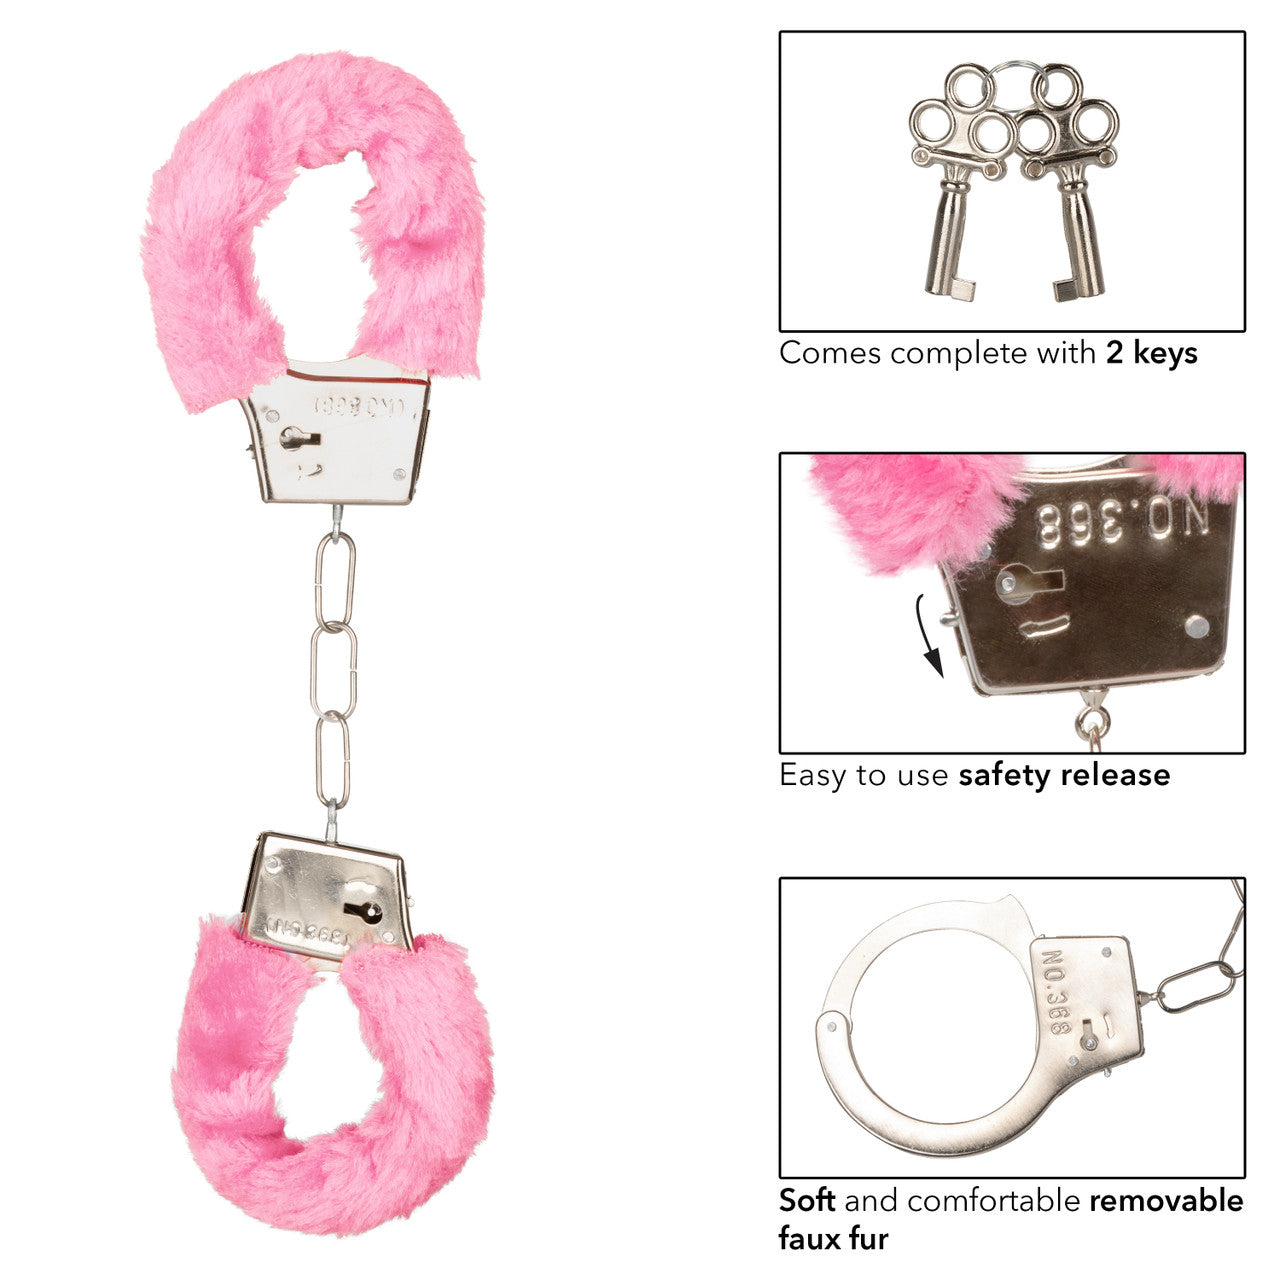 Playful Fluffy Furry Cuffs - Pink